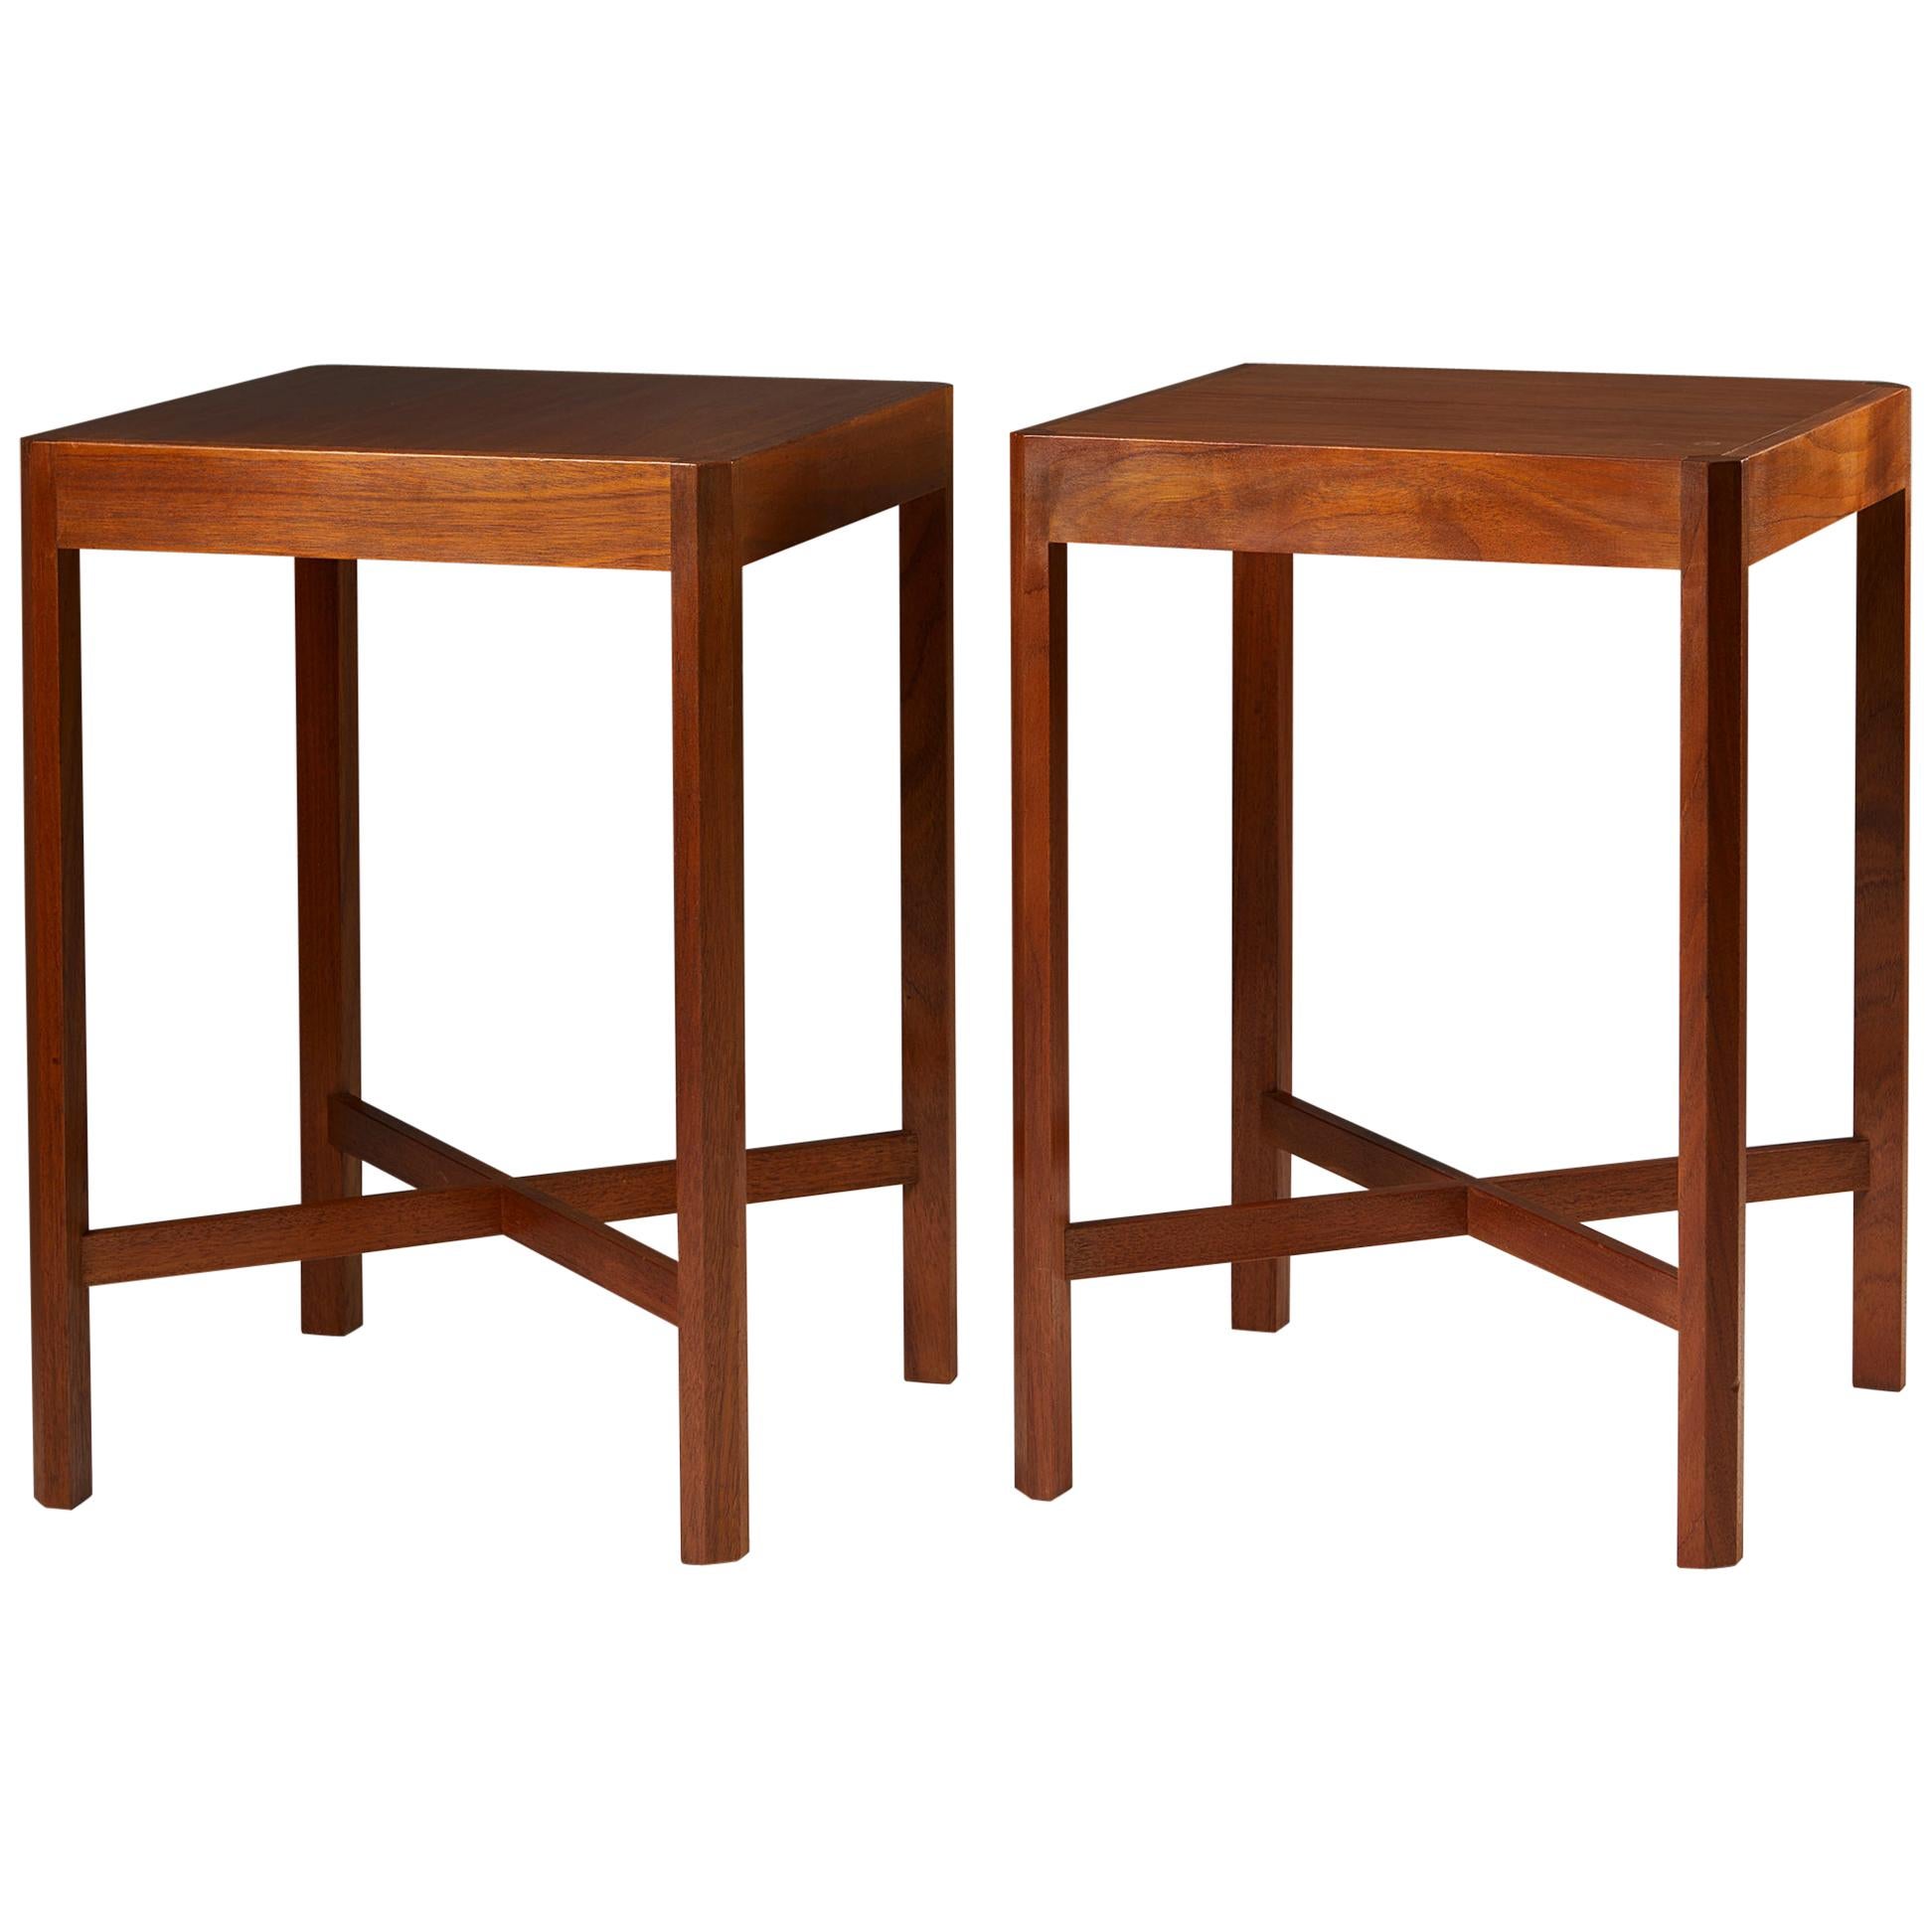 Set of Two Side Tables Designed by Stig Lönngren for Hi-Gruppen, Sweden, 1969